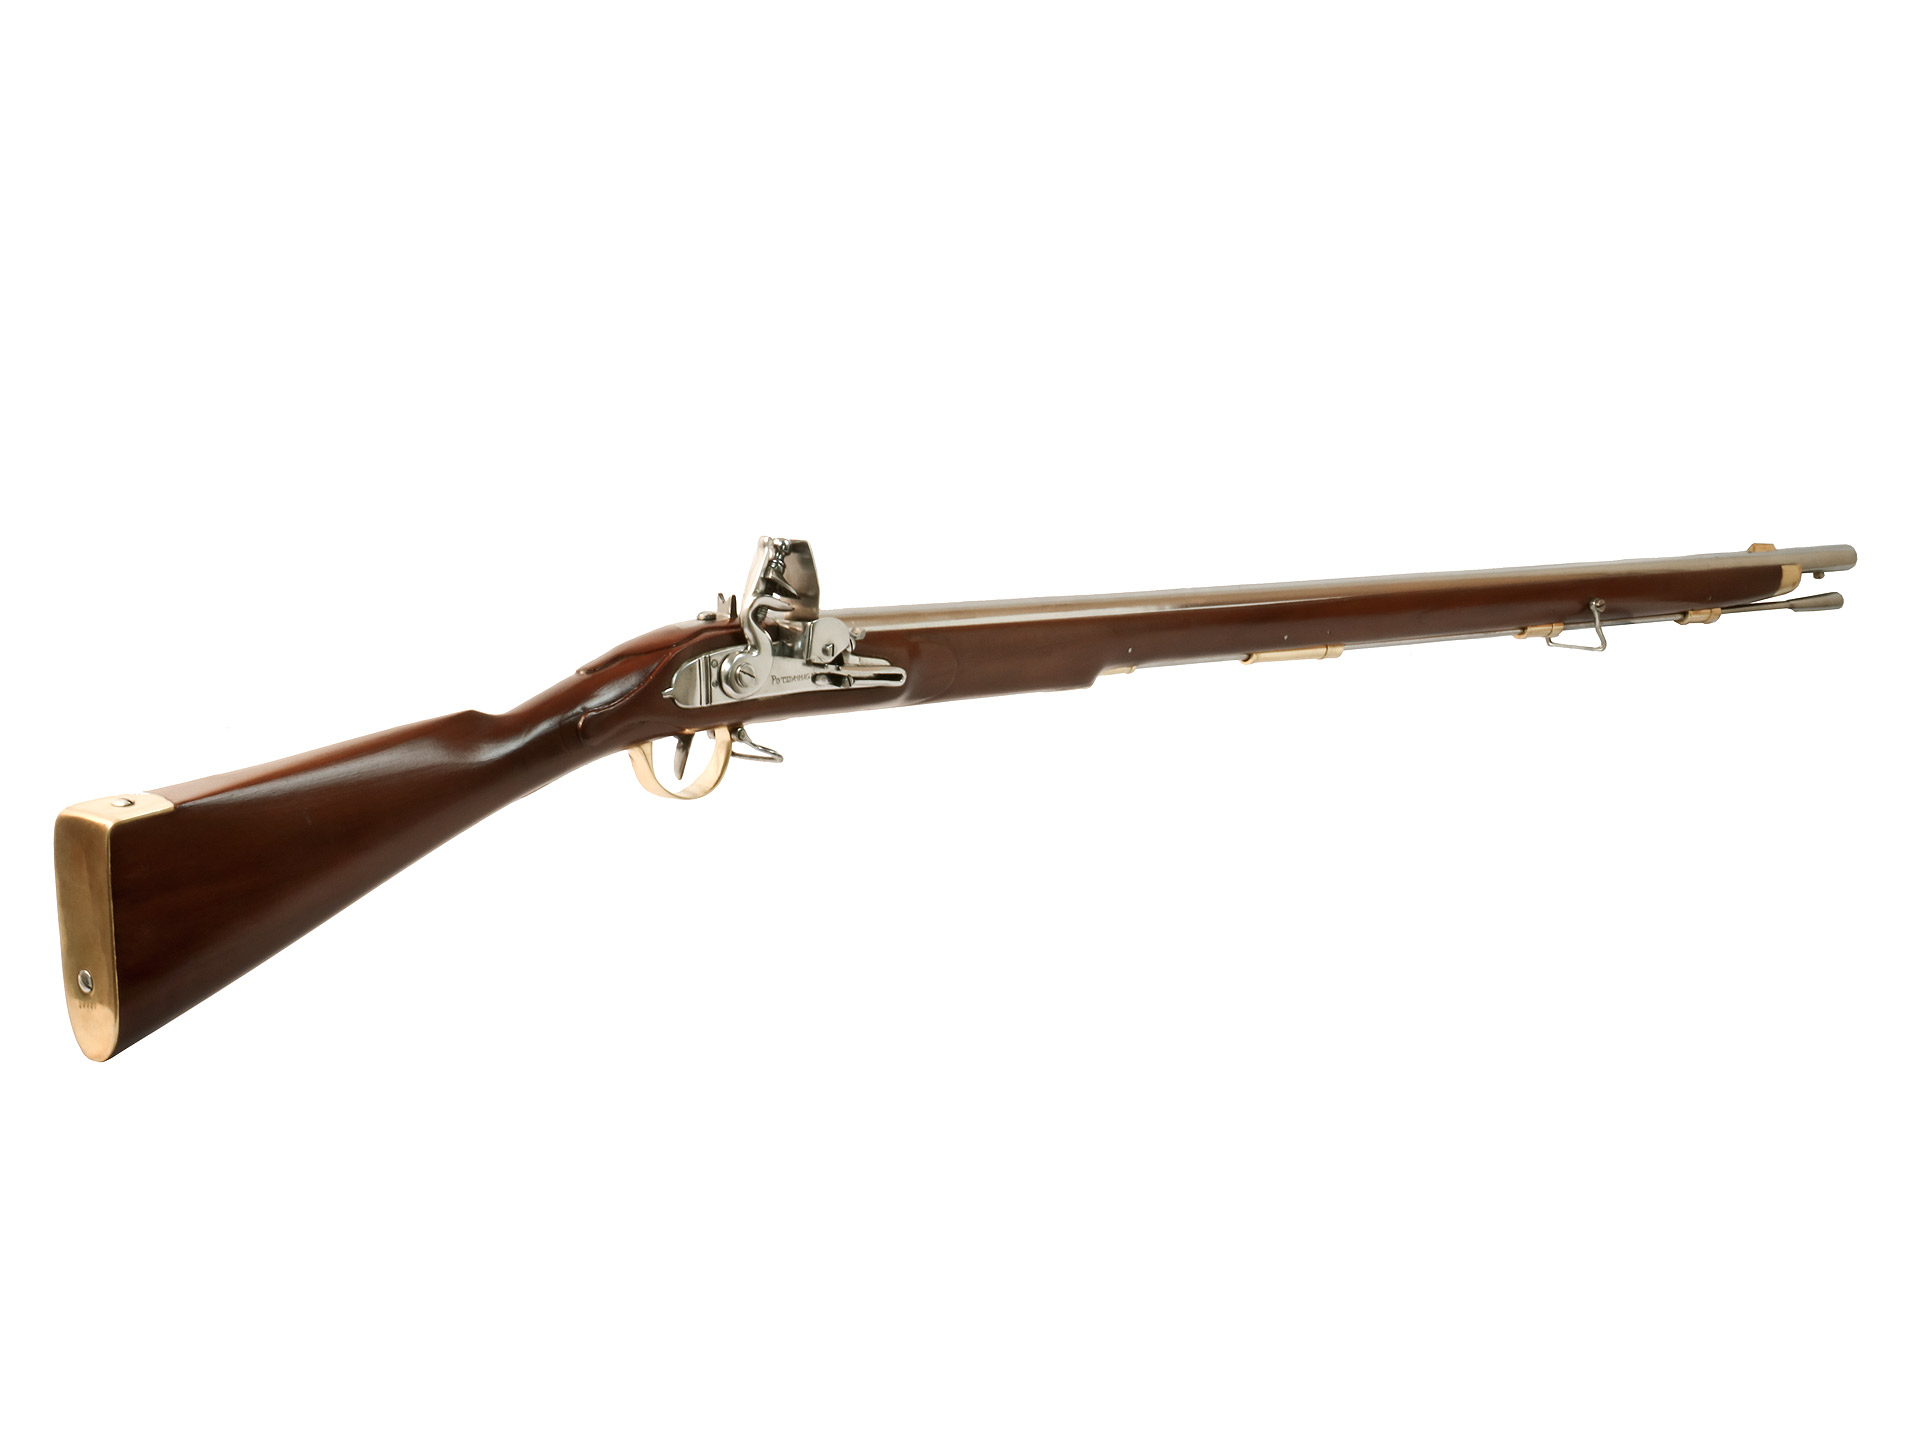 Vorderlader Steinschlossgewehr Potsdam Muskete um 1800, Kaliber .63 bzw. 16 mm (P18)